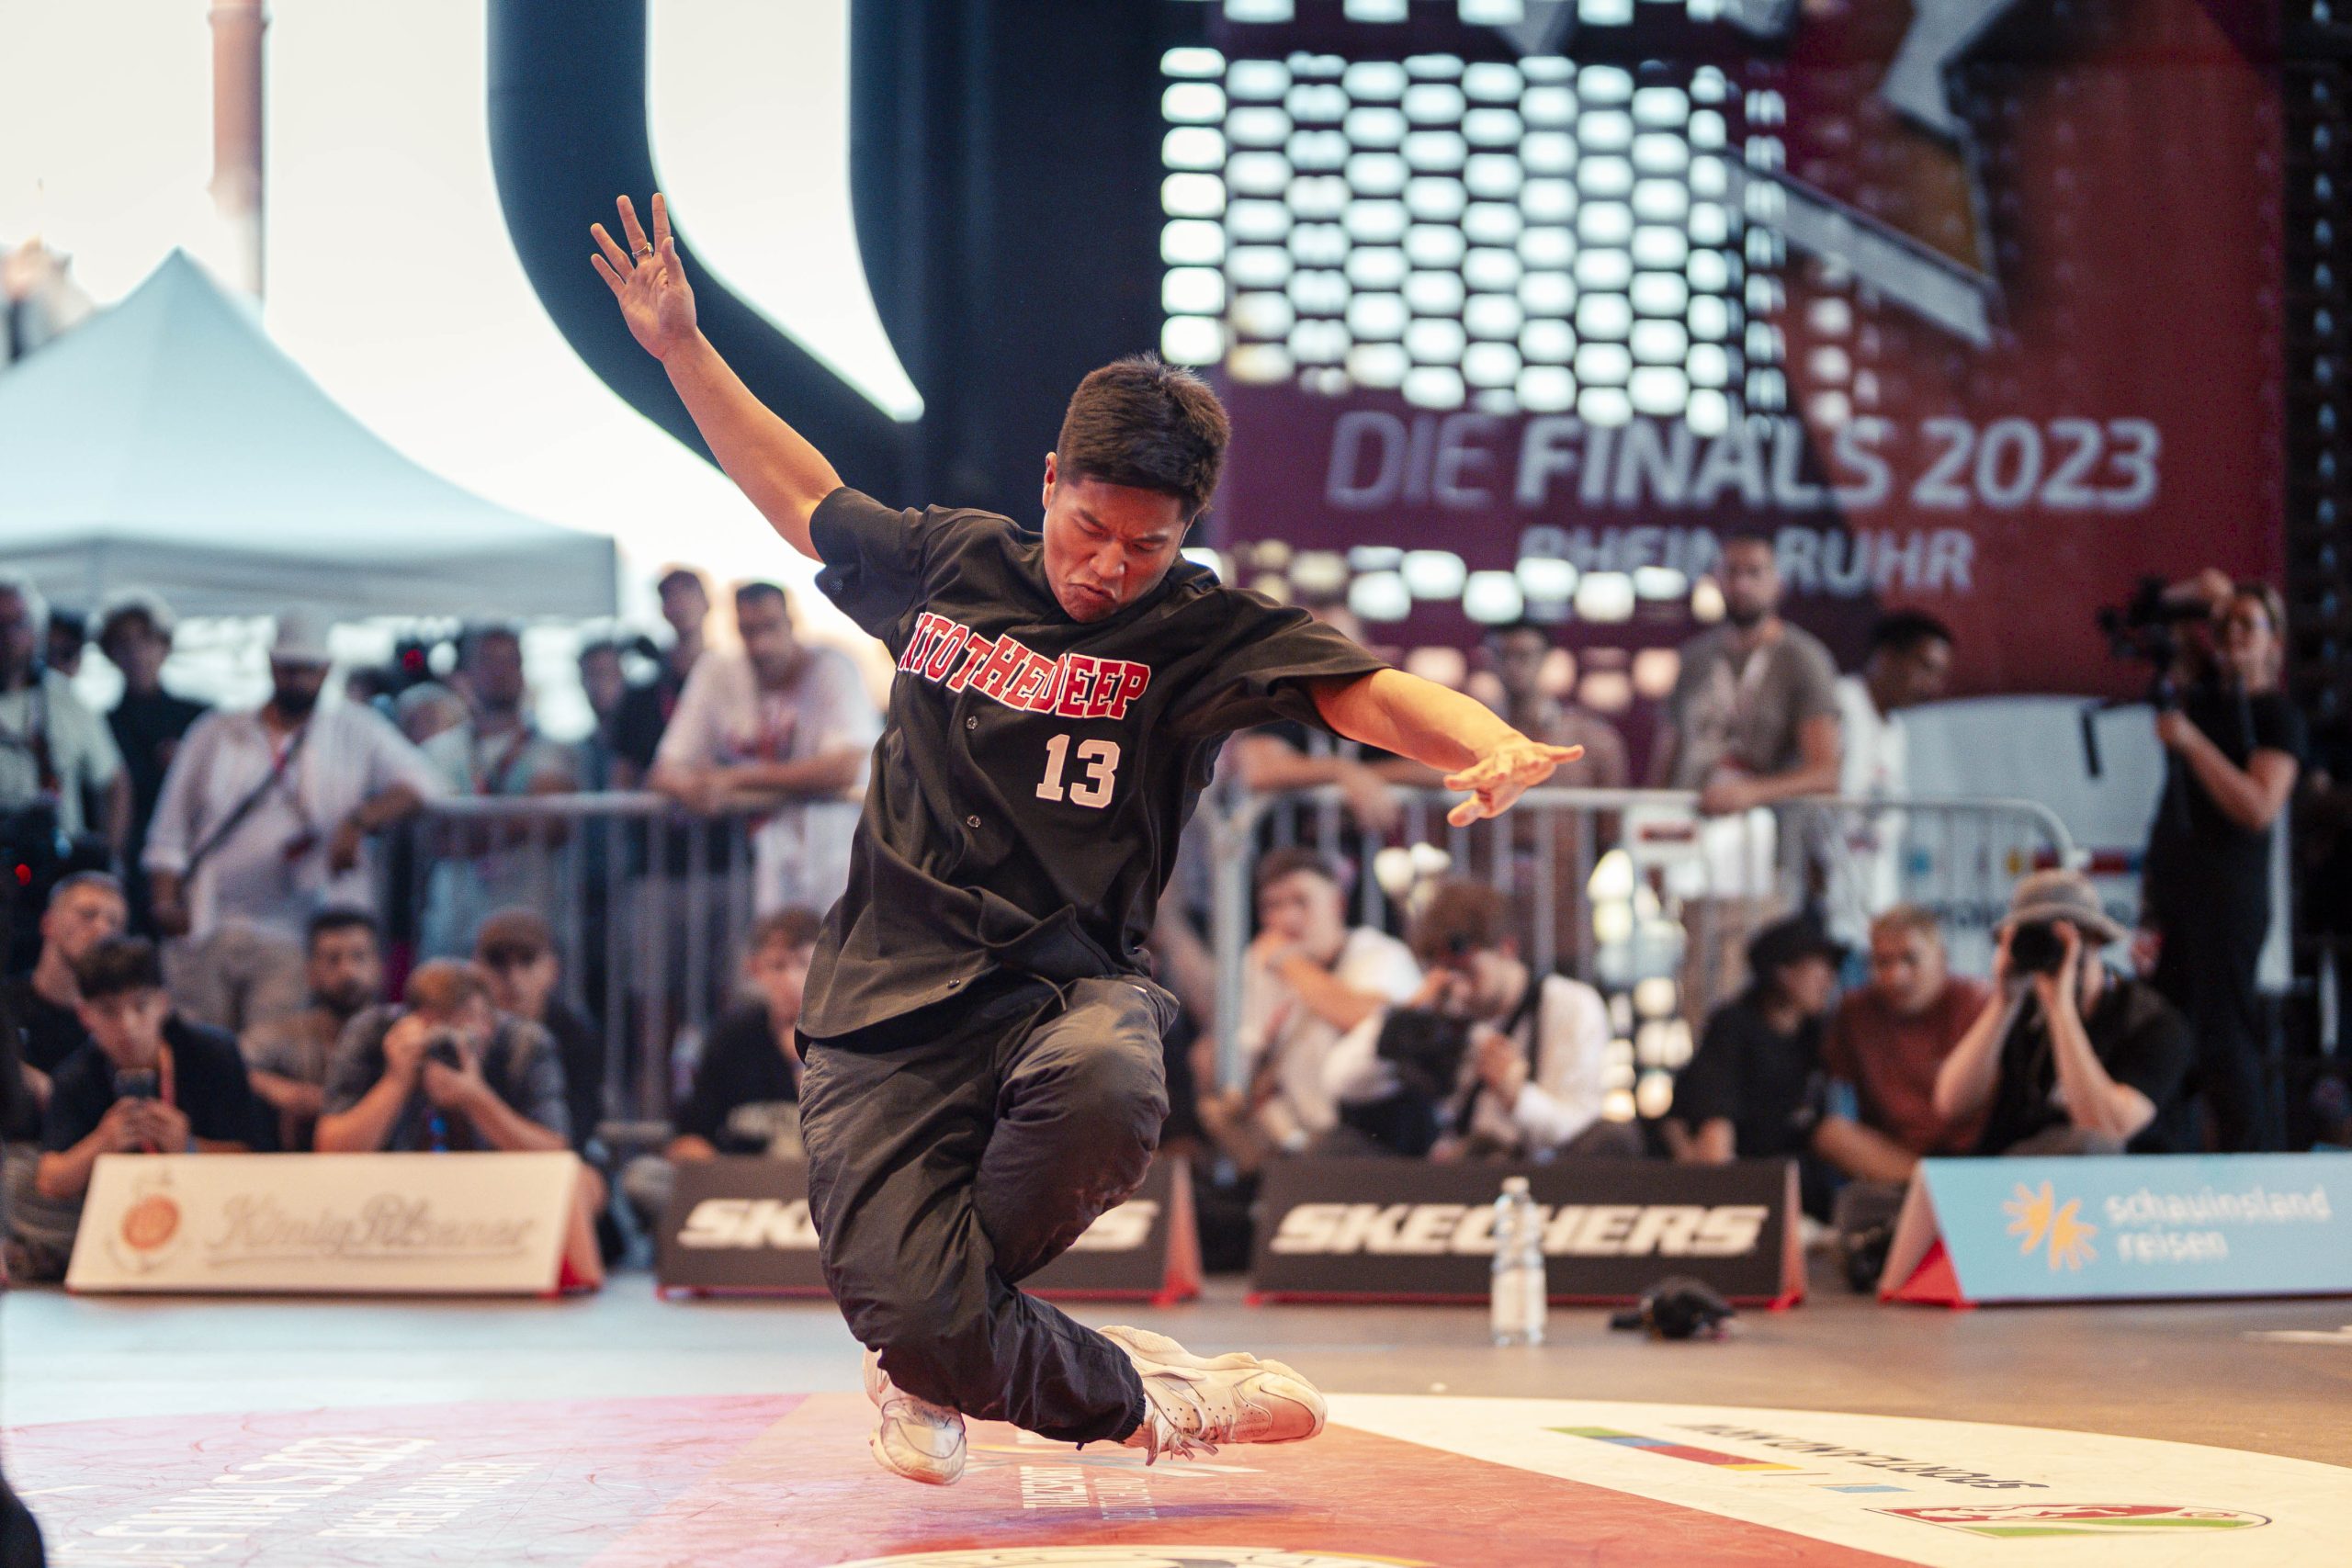 "Chau-Lin" bei den Finals 2023 in der Gießhalle in Duisburg. Foto: Eugen Shkolnikov